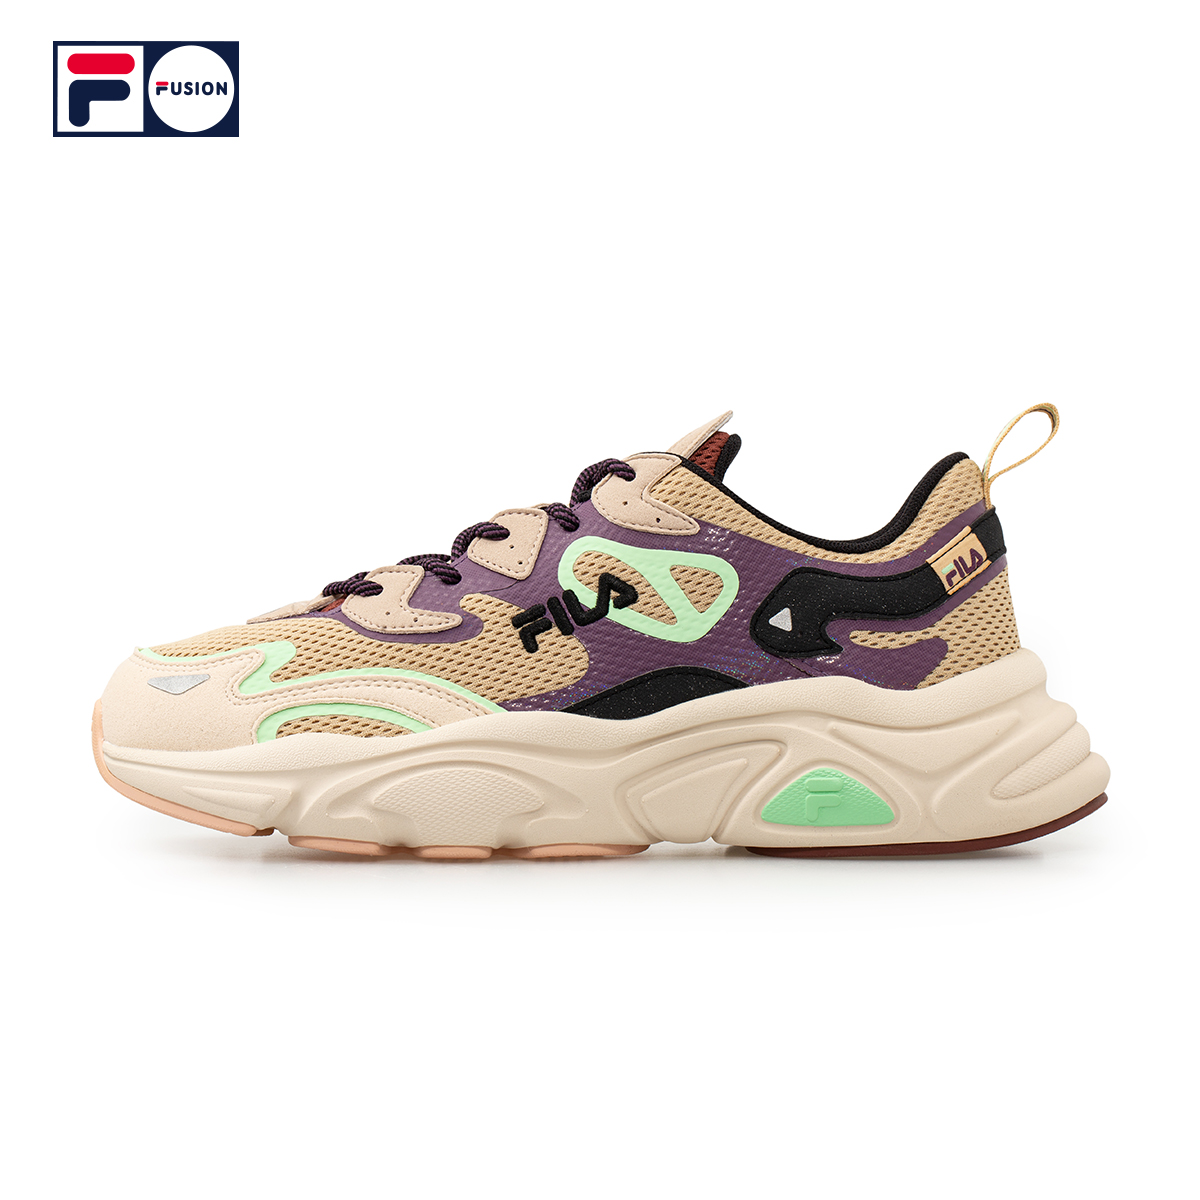 Fila Fusion Shoes. Fila Fusion кроссовки. Fila Fusion ray 2. Fila Fusion Casper. Fila fusion